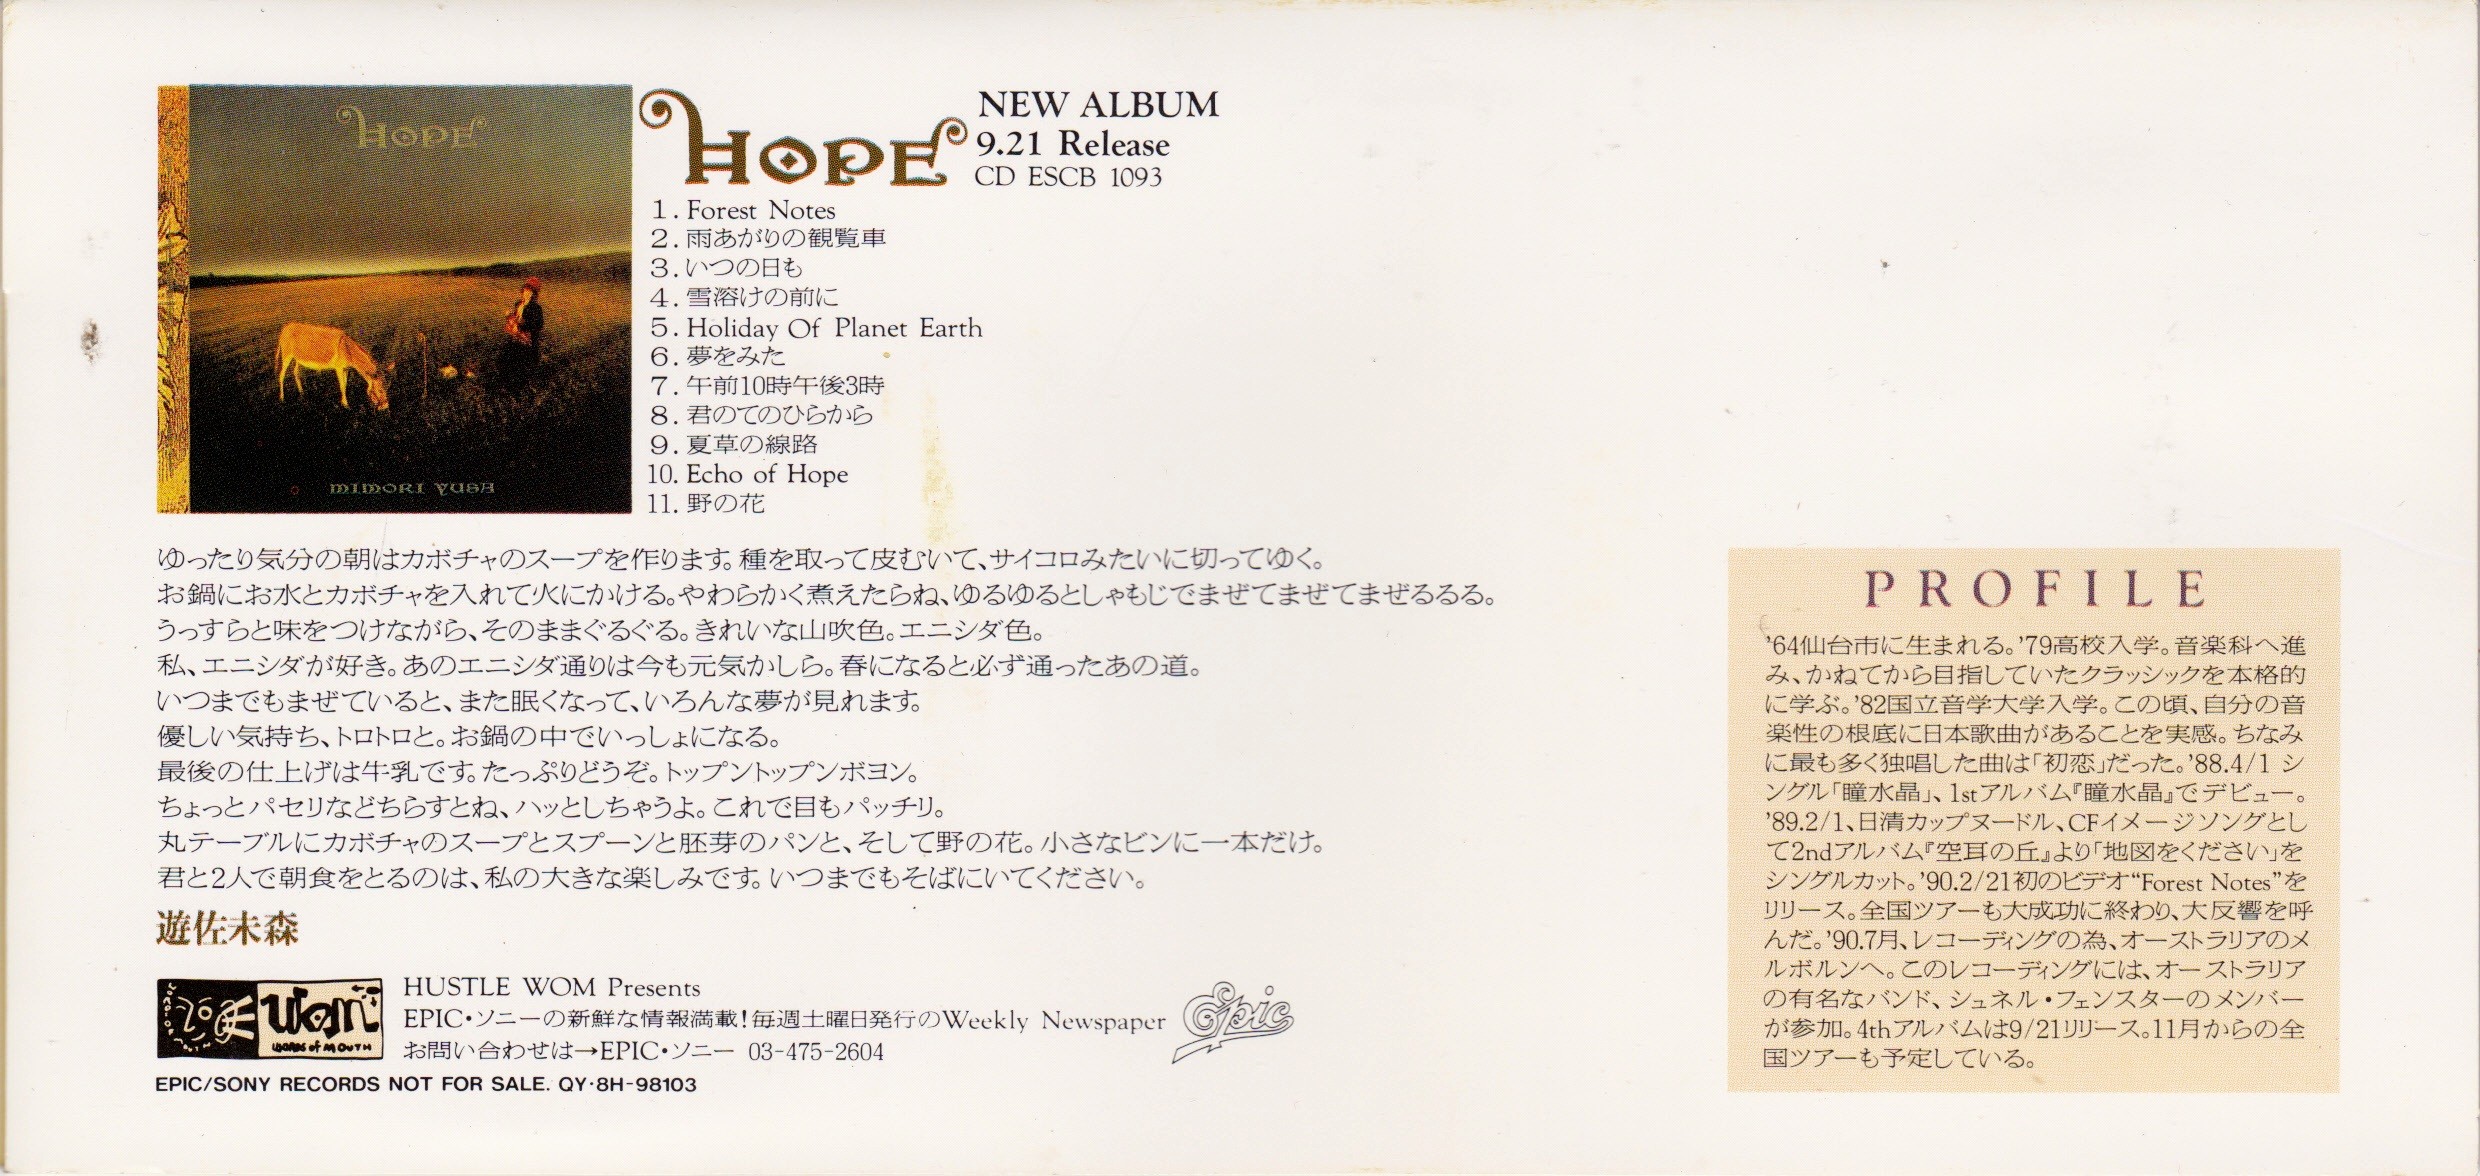 遊佐未森 サウンドカタログ voice of HOPE